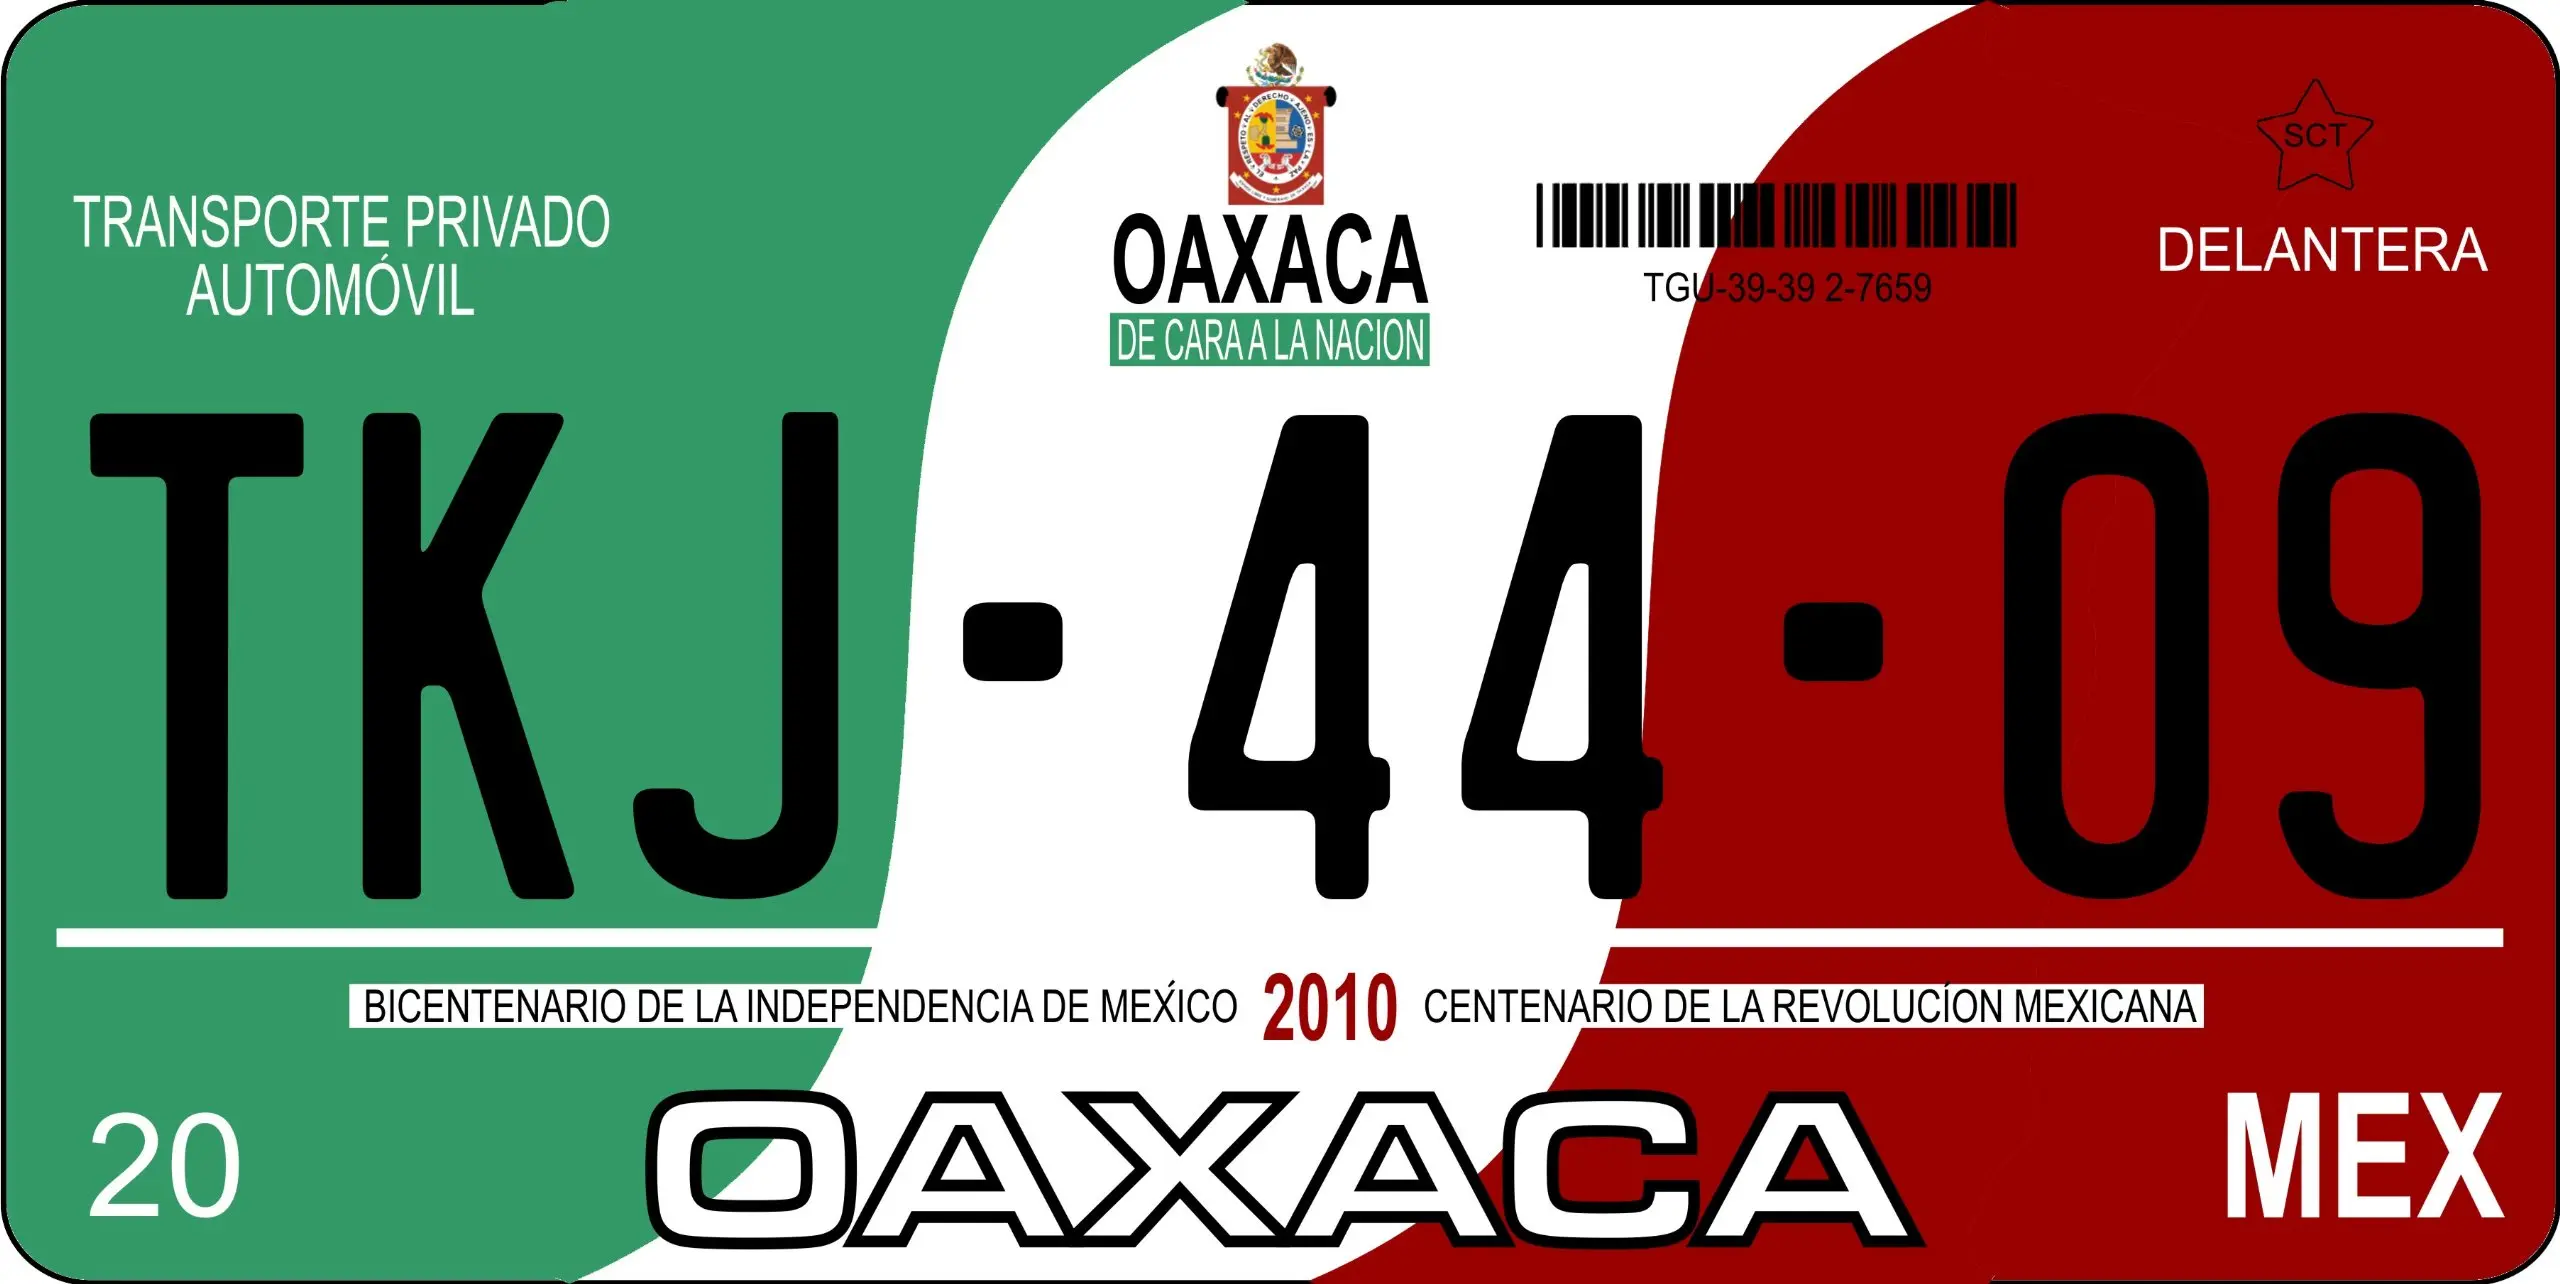 placas de motocicleta oaxaca - Cuánto cuestan las placas de moto en Oaxaca